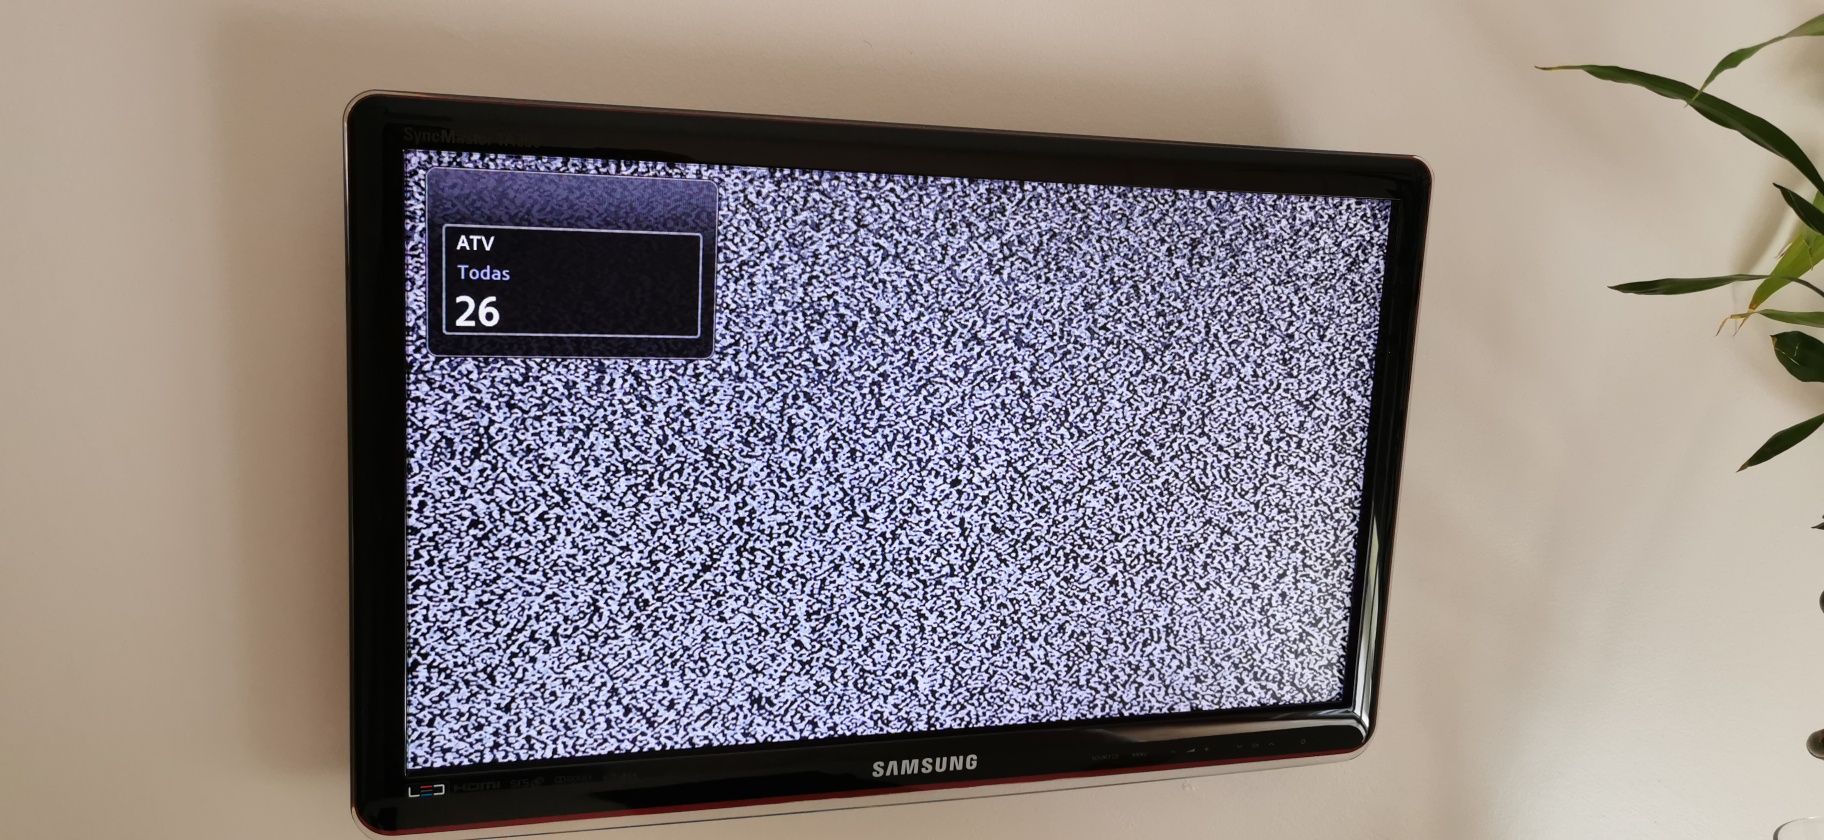 Televisão Samsung Sync Master TA350 de 50cms